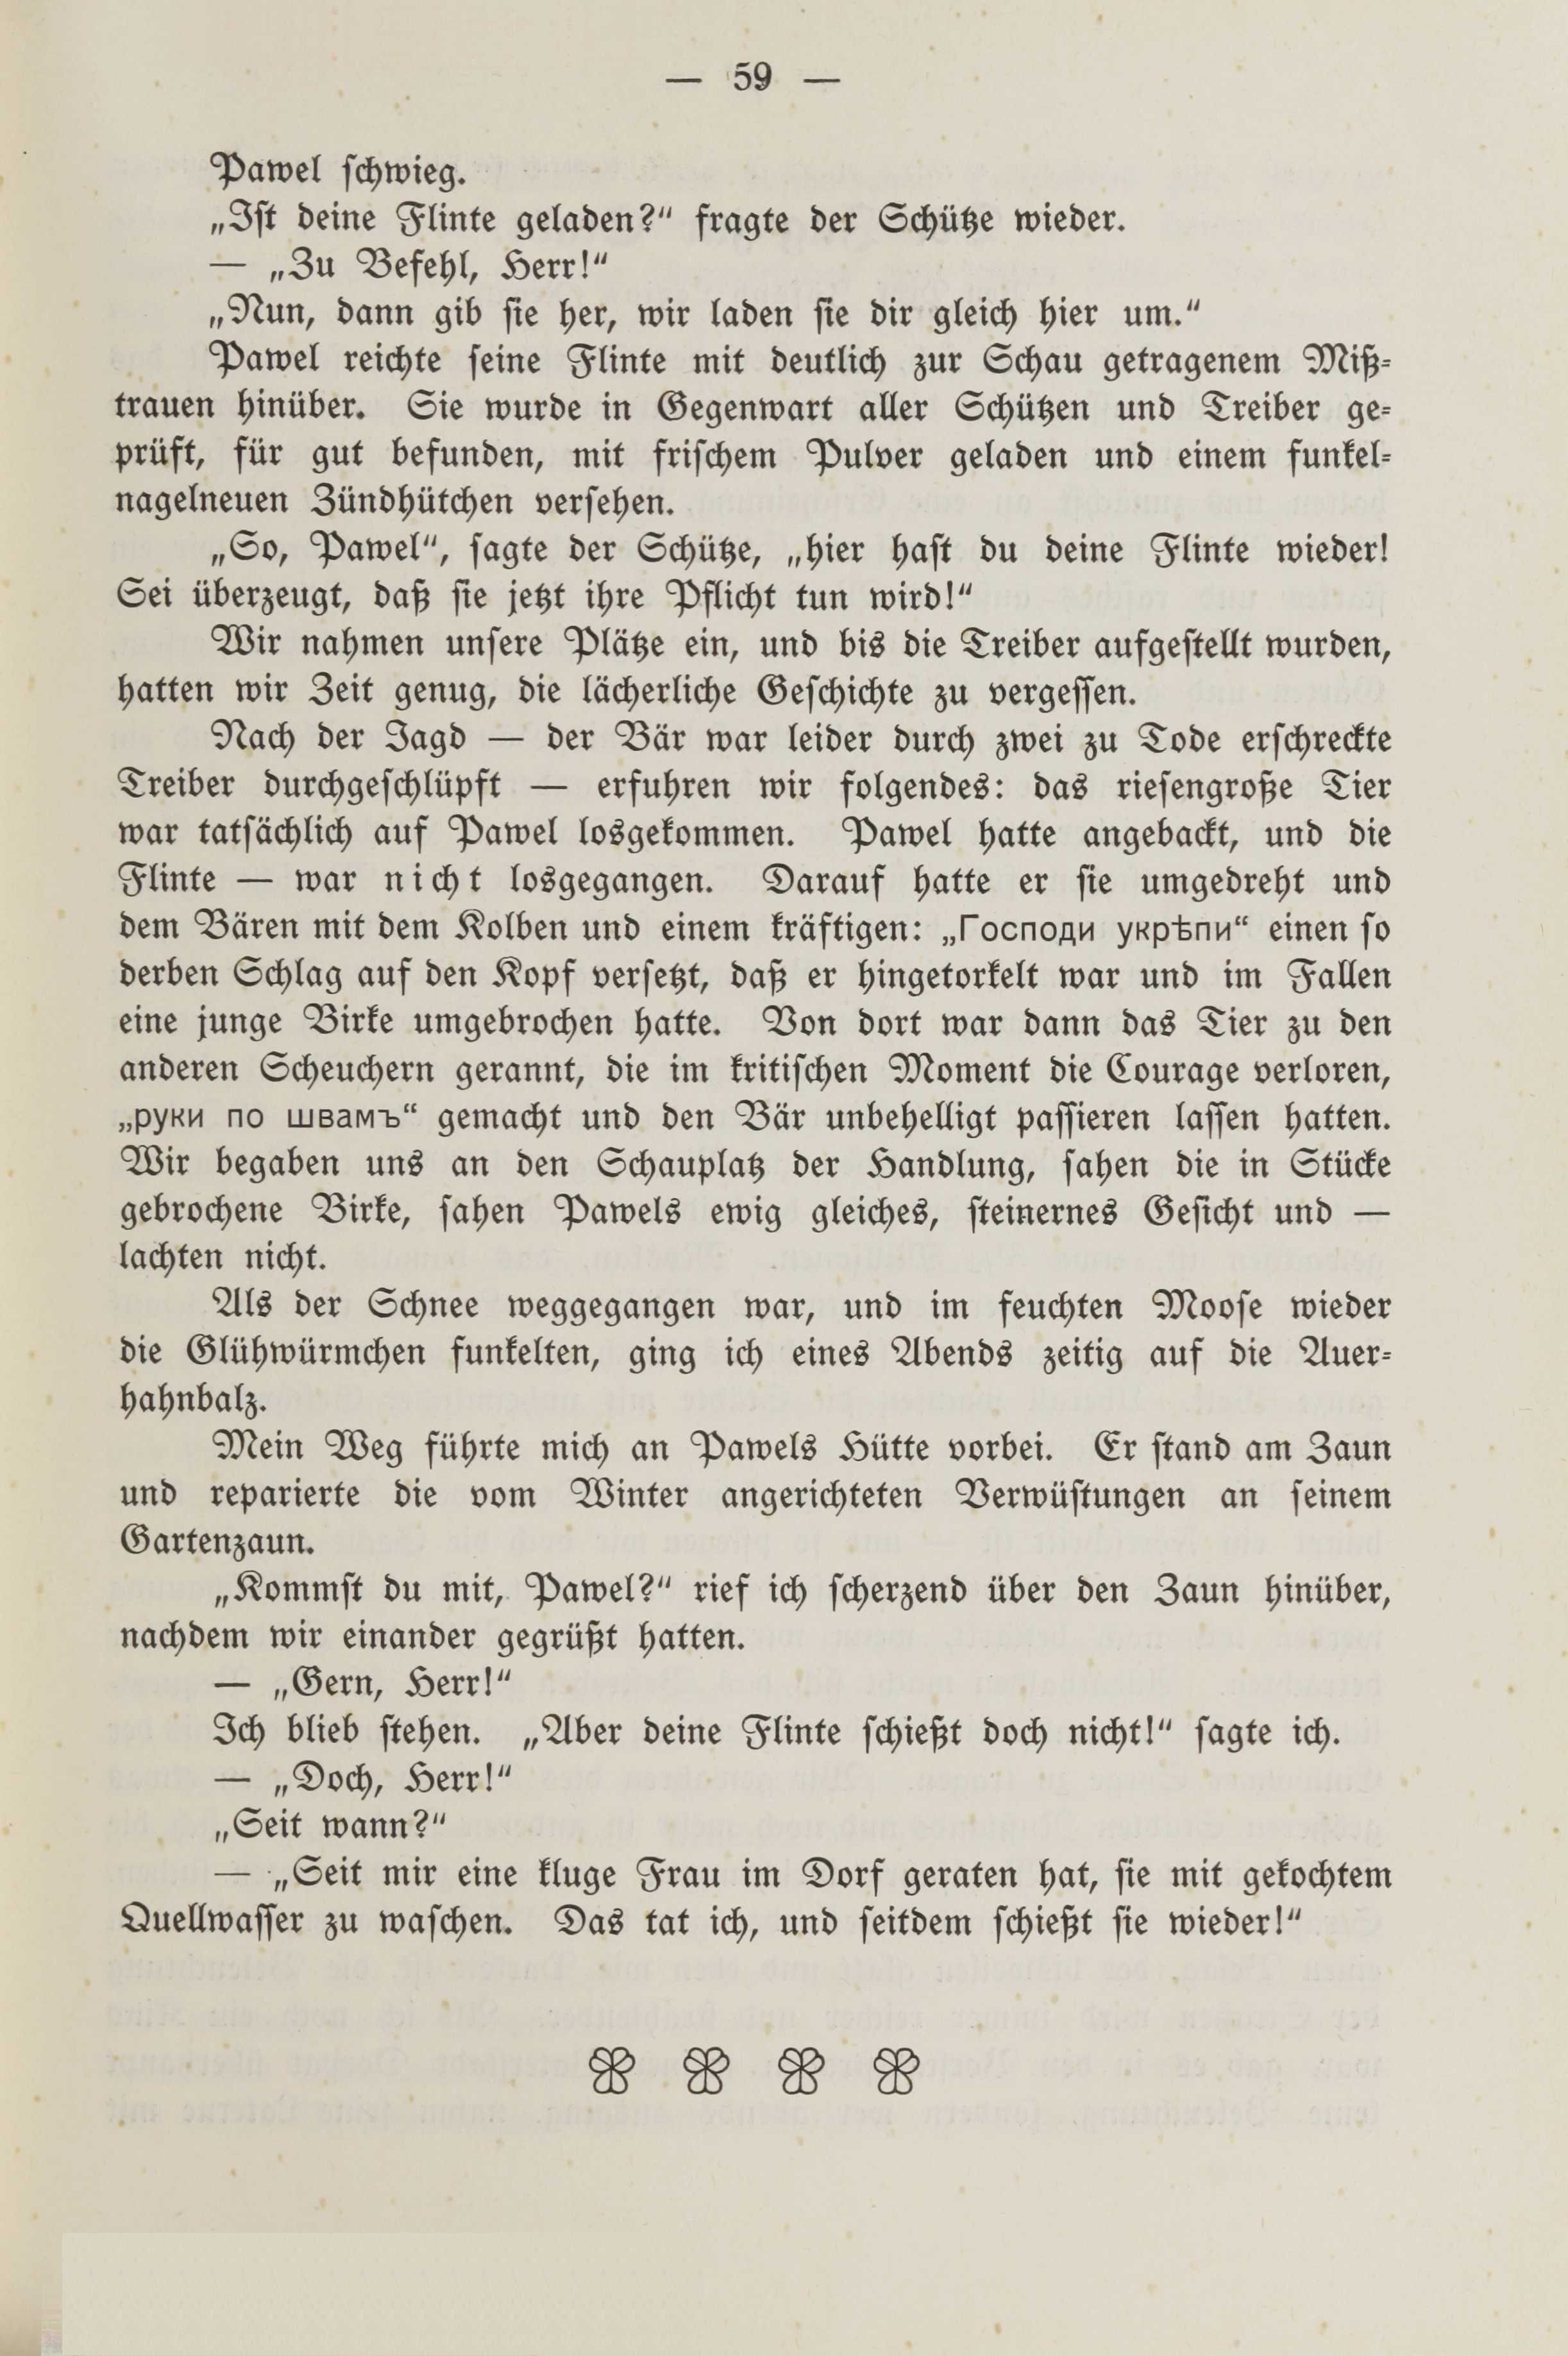 Deutsche Monatsschrift für Russland [2] (1913) | 63. (59) Main body of text